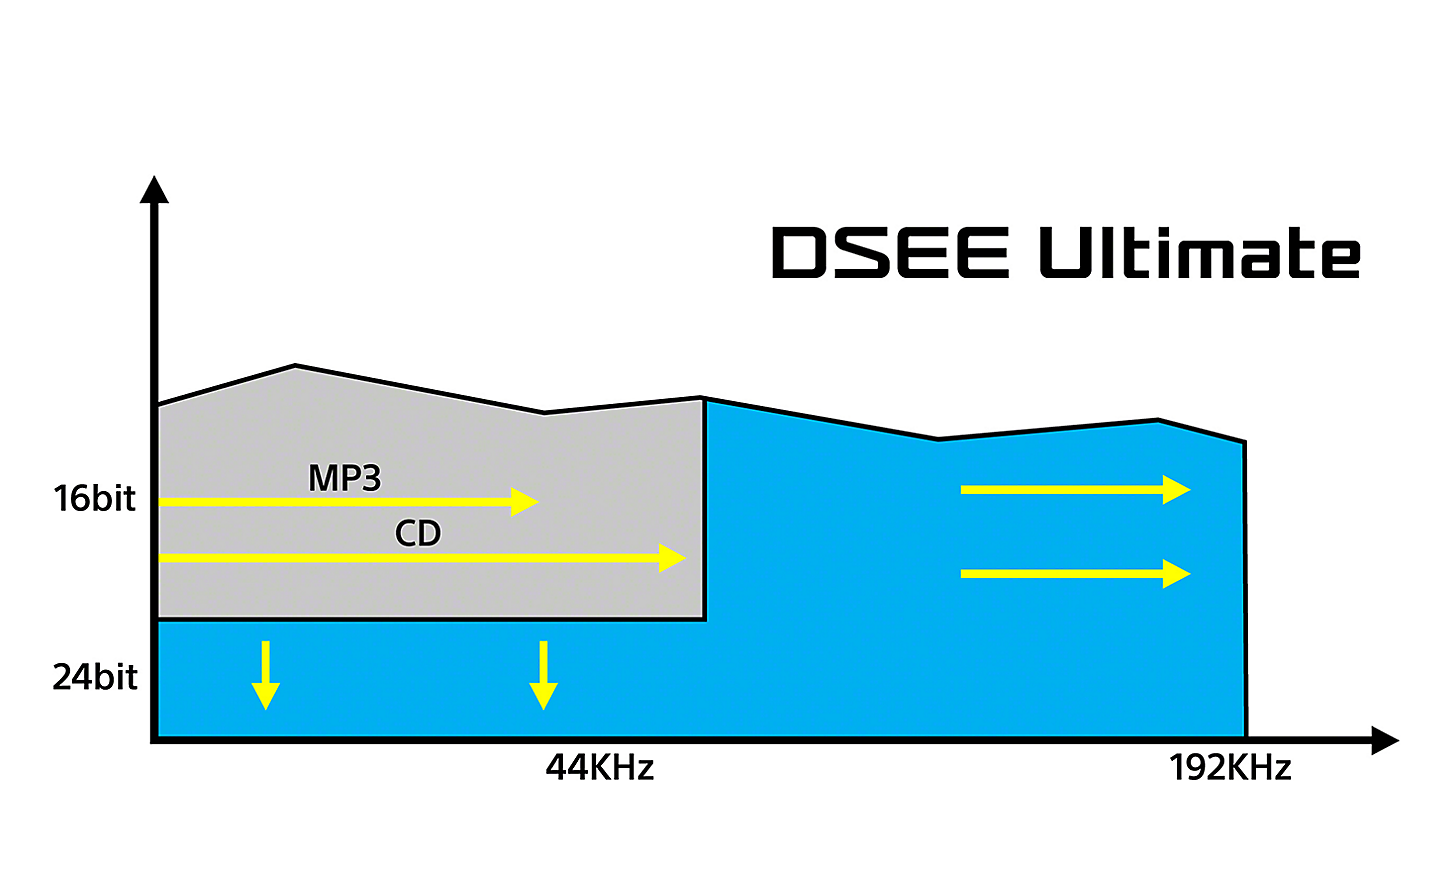 Graf znázorňující účinek technologie DSEE Ultimate na digitální hudbu